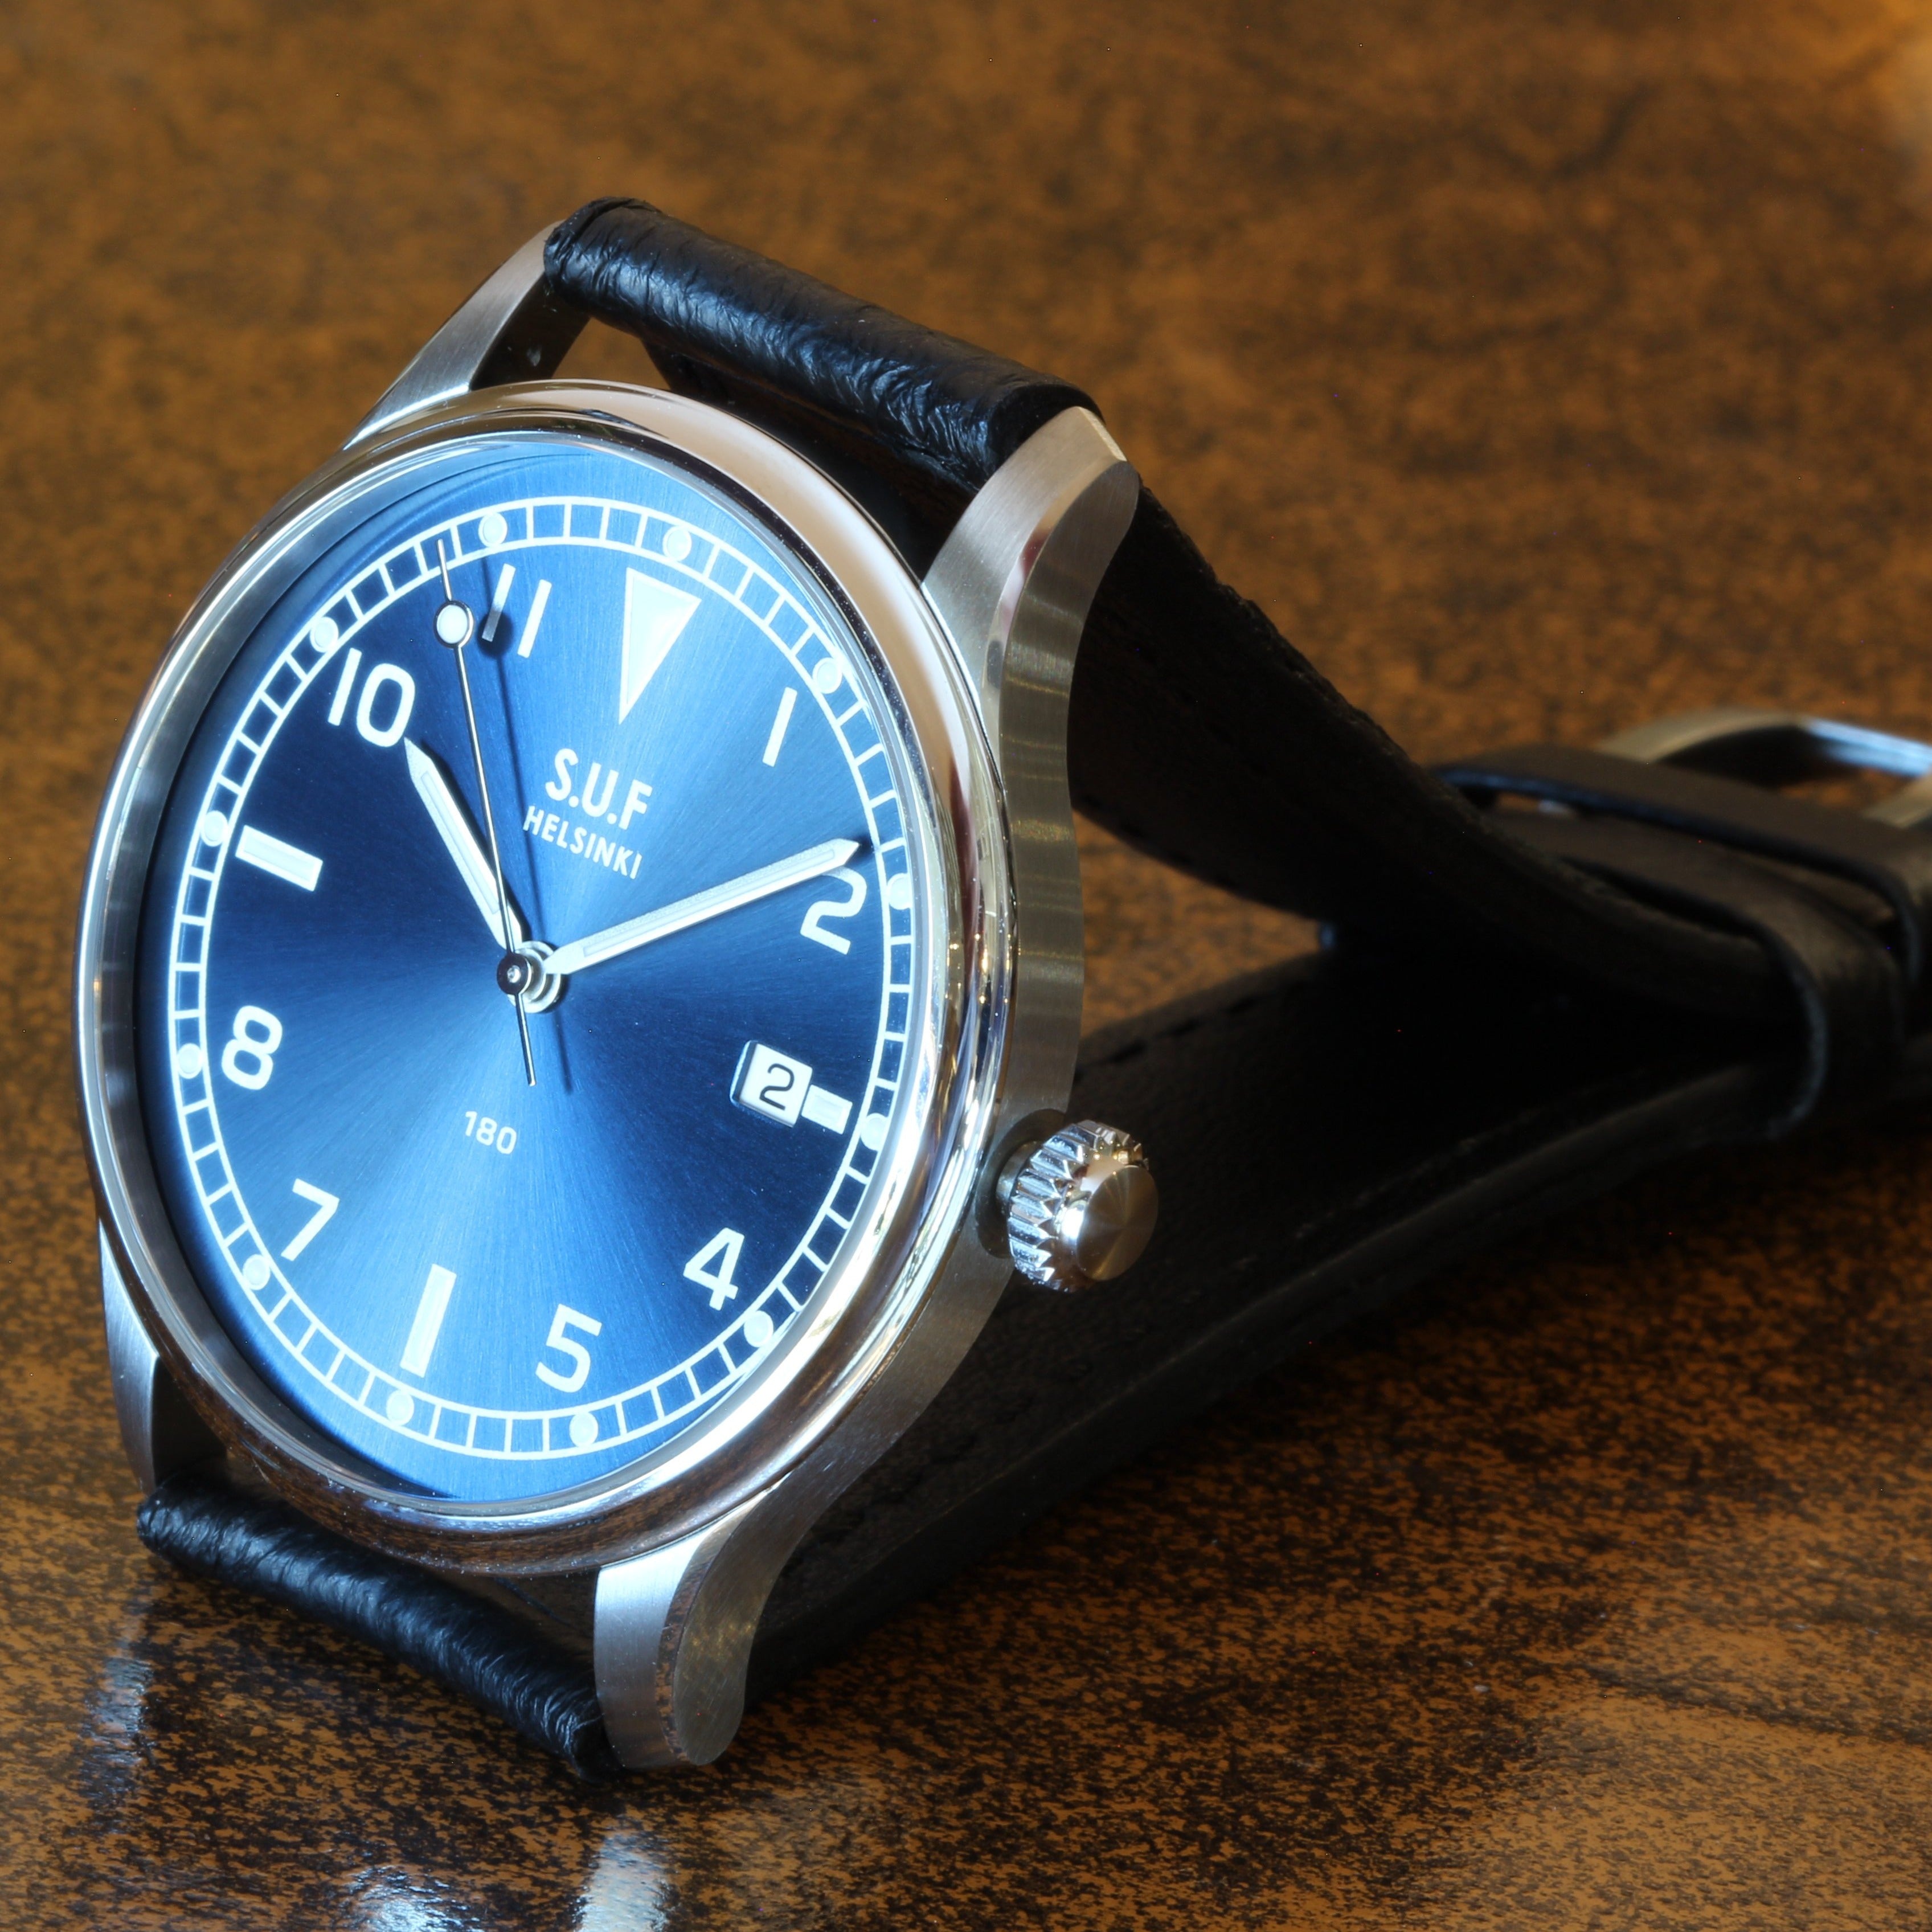 SUF Helsinki "180" S  Blue dial Ltd Edition Field watch on strap